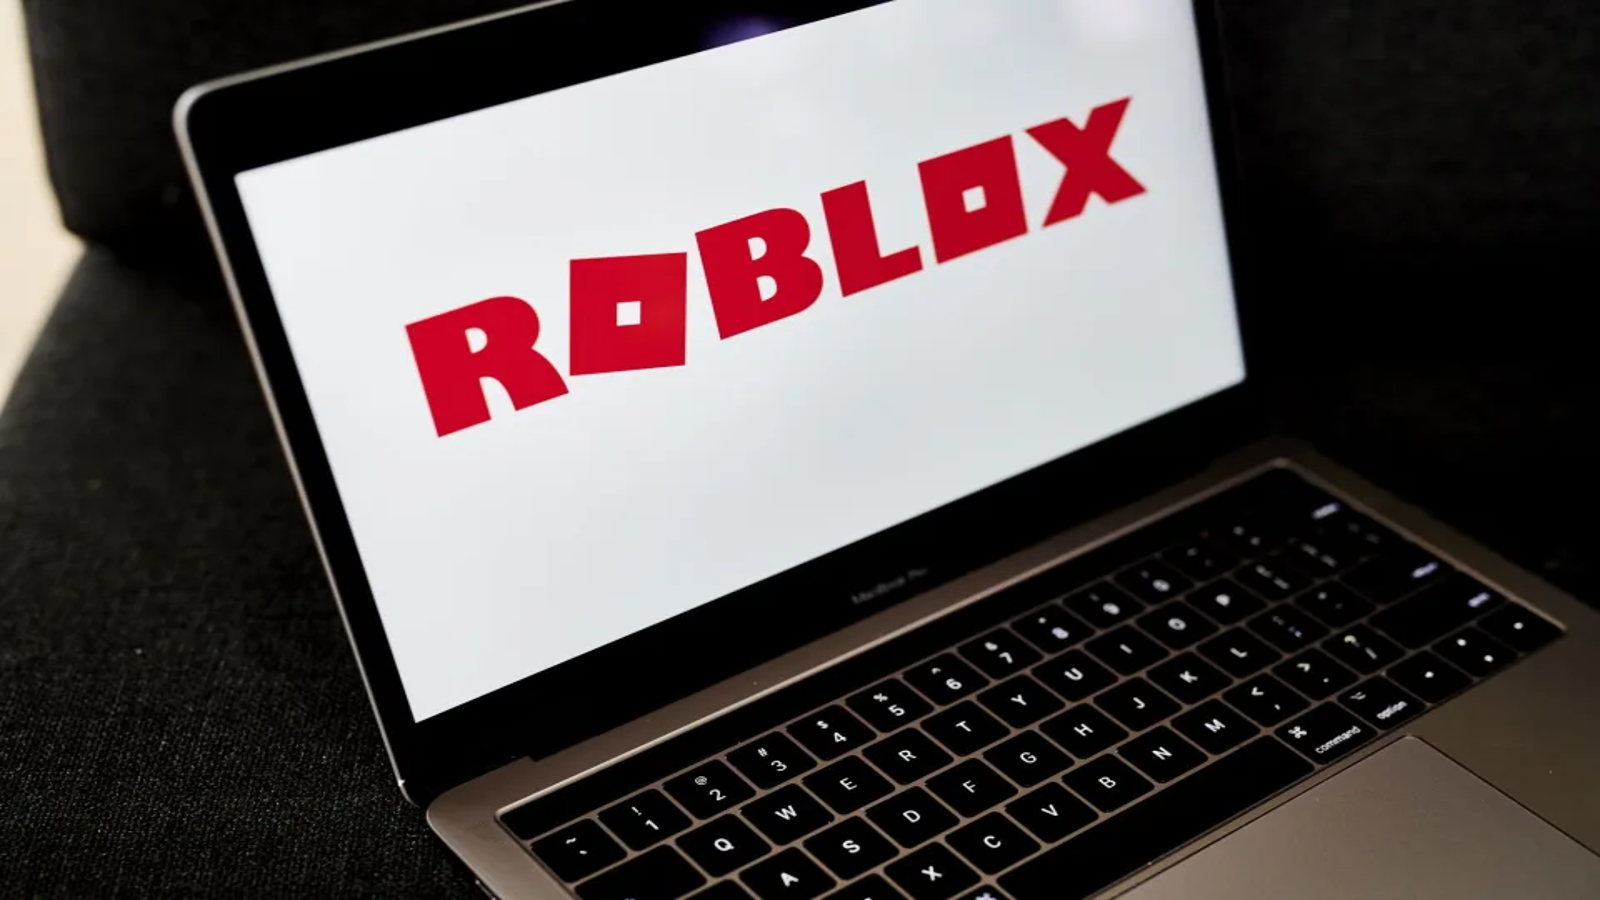 Valor das ações da Roblox cai 21%